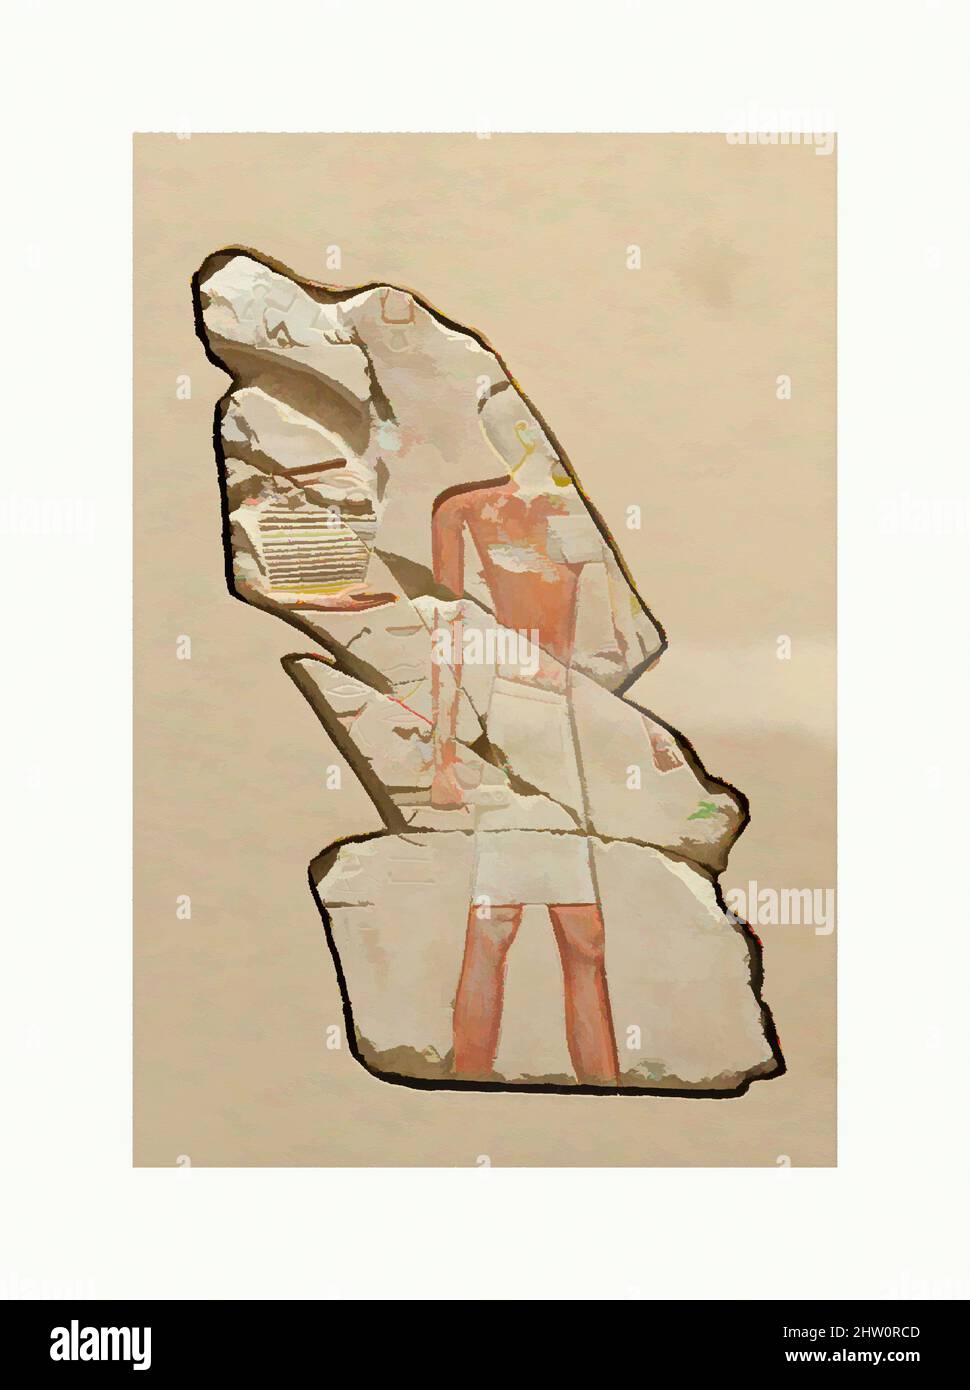 Kunst inspiriert von Figur eines Schreibers, Reich der Mitte, Dynastie 11, ca. 2051–2000 v. Chr., aus Ägypten, Oberägypten, Theben, Deir el-Bahri, Grab von Khety (TT 311,), vom Fuße des Causeway, 1926–27, Kalkstein, Farbe, H. 36 x B 22 cm (14 3/16 x 8 11/16 in.), die Hauptfigur sichtbar, Classic Works modernisiert von Artotop mit einem Schuss Moderne. Formen, Farbe und Wert, auffällige visuelle Wirkung auf Kunst. Emotionen durch Freiheit von Kunstwerken auf zeitgemäße Weise. Eine zeitlose Botschaft, die eine wild kreative neue Richtung verfolgt. Künstler, die sich dem digitalen Medium zuwenden und die Artotop NFT erschaffen Stockfoto